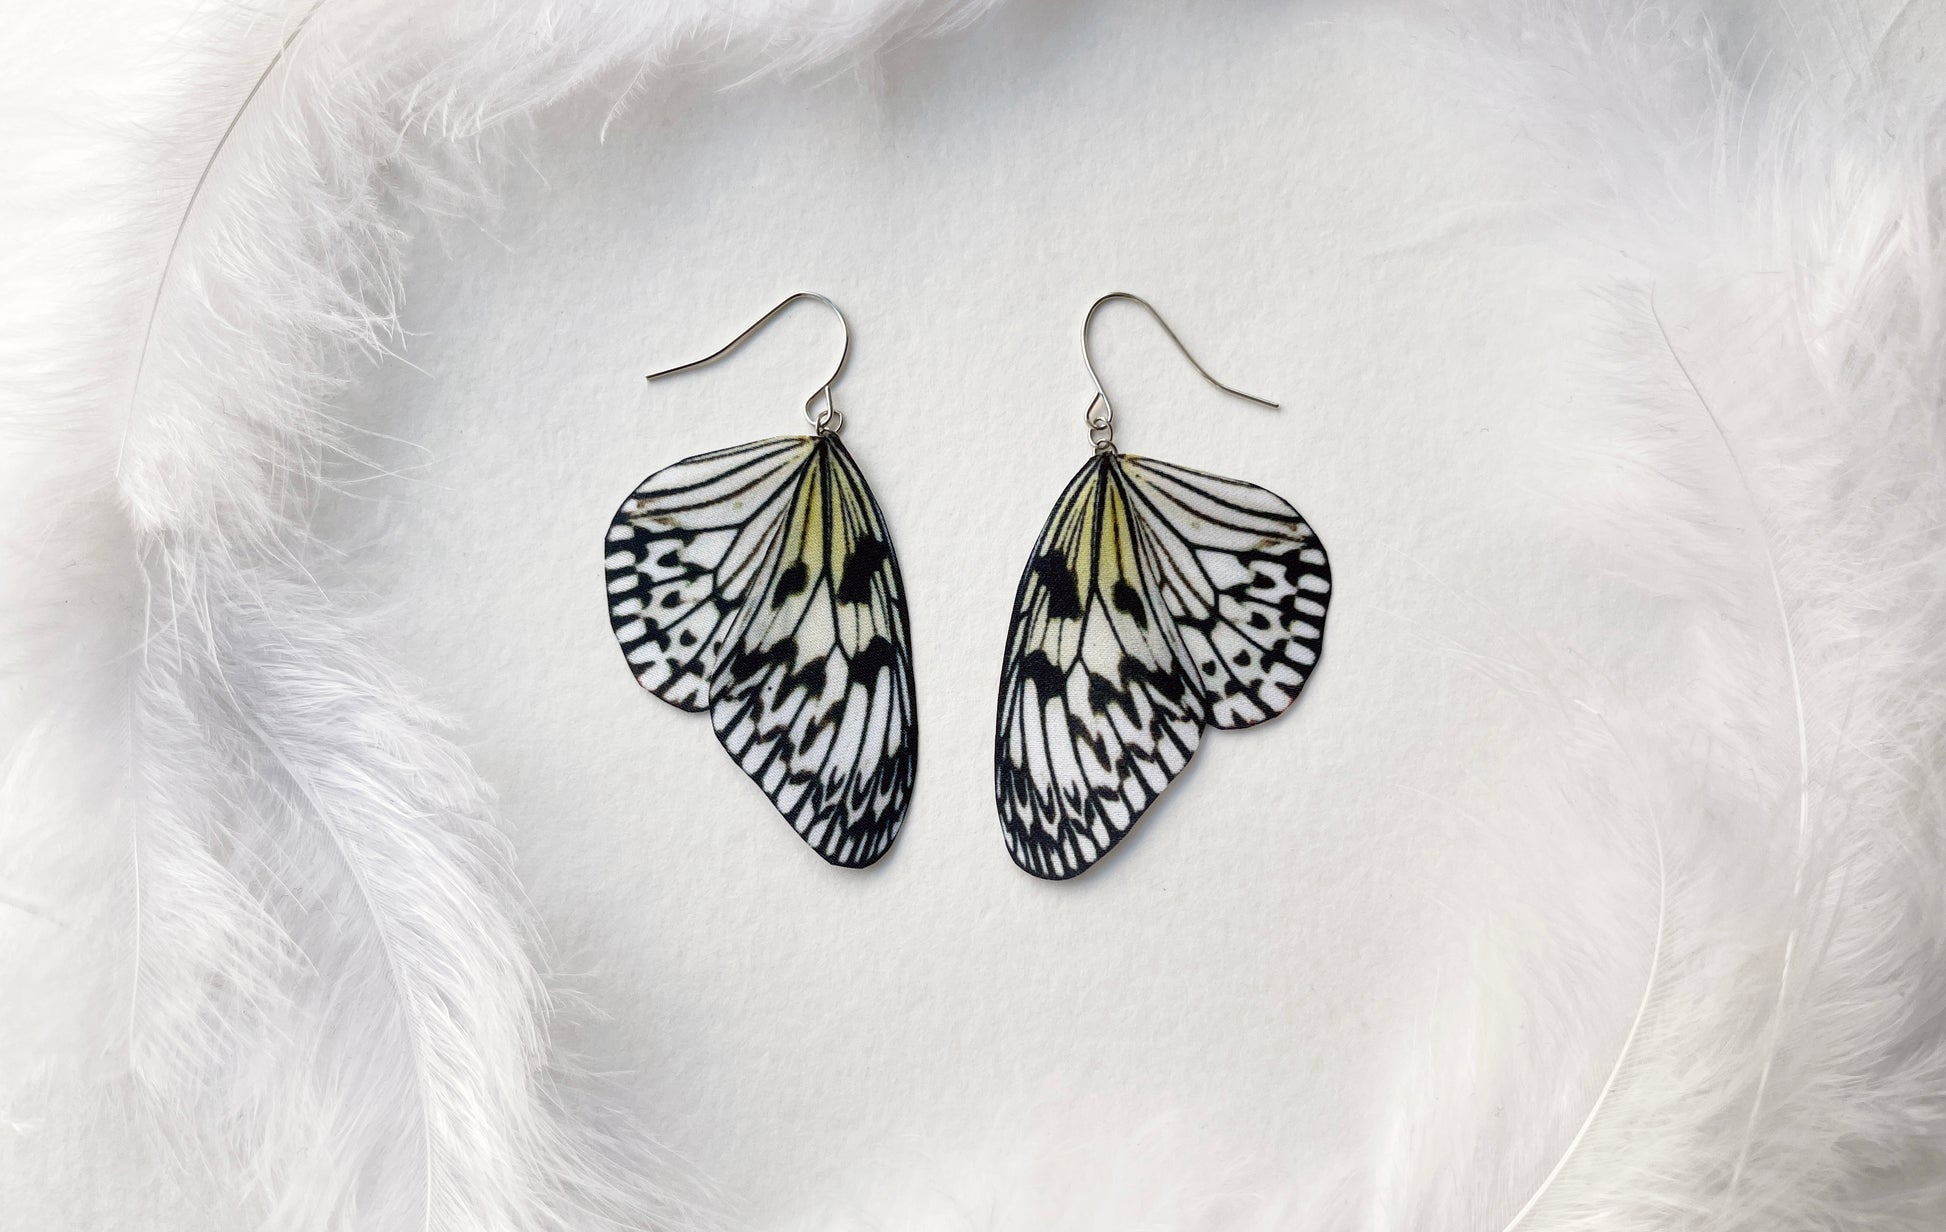 Paper Kite Butterfly Wing Earrings in Boho Style